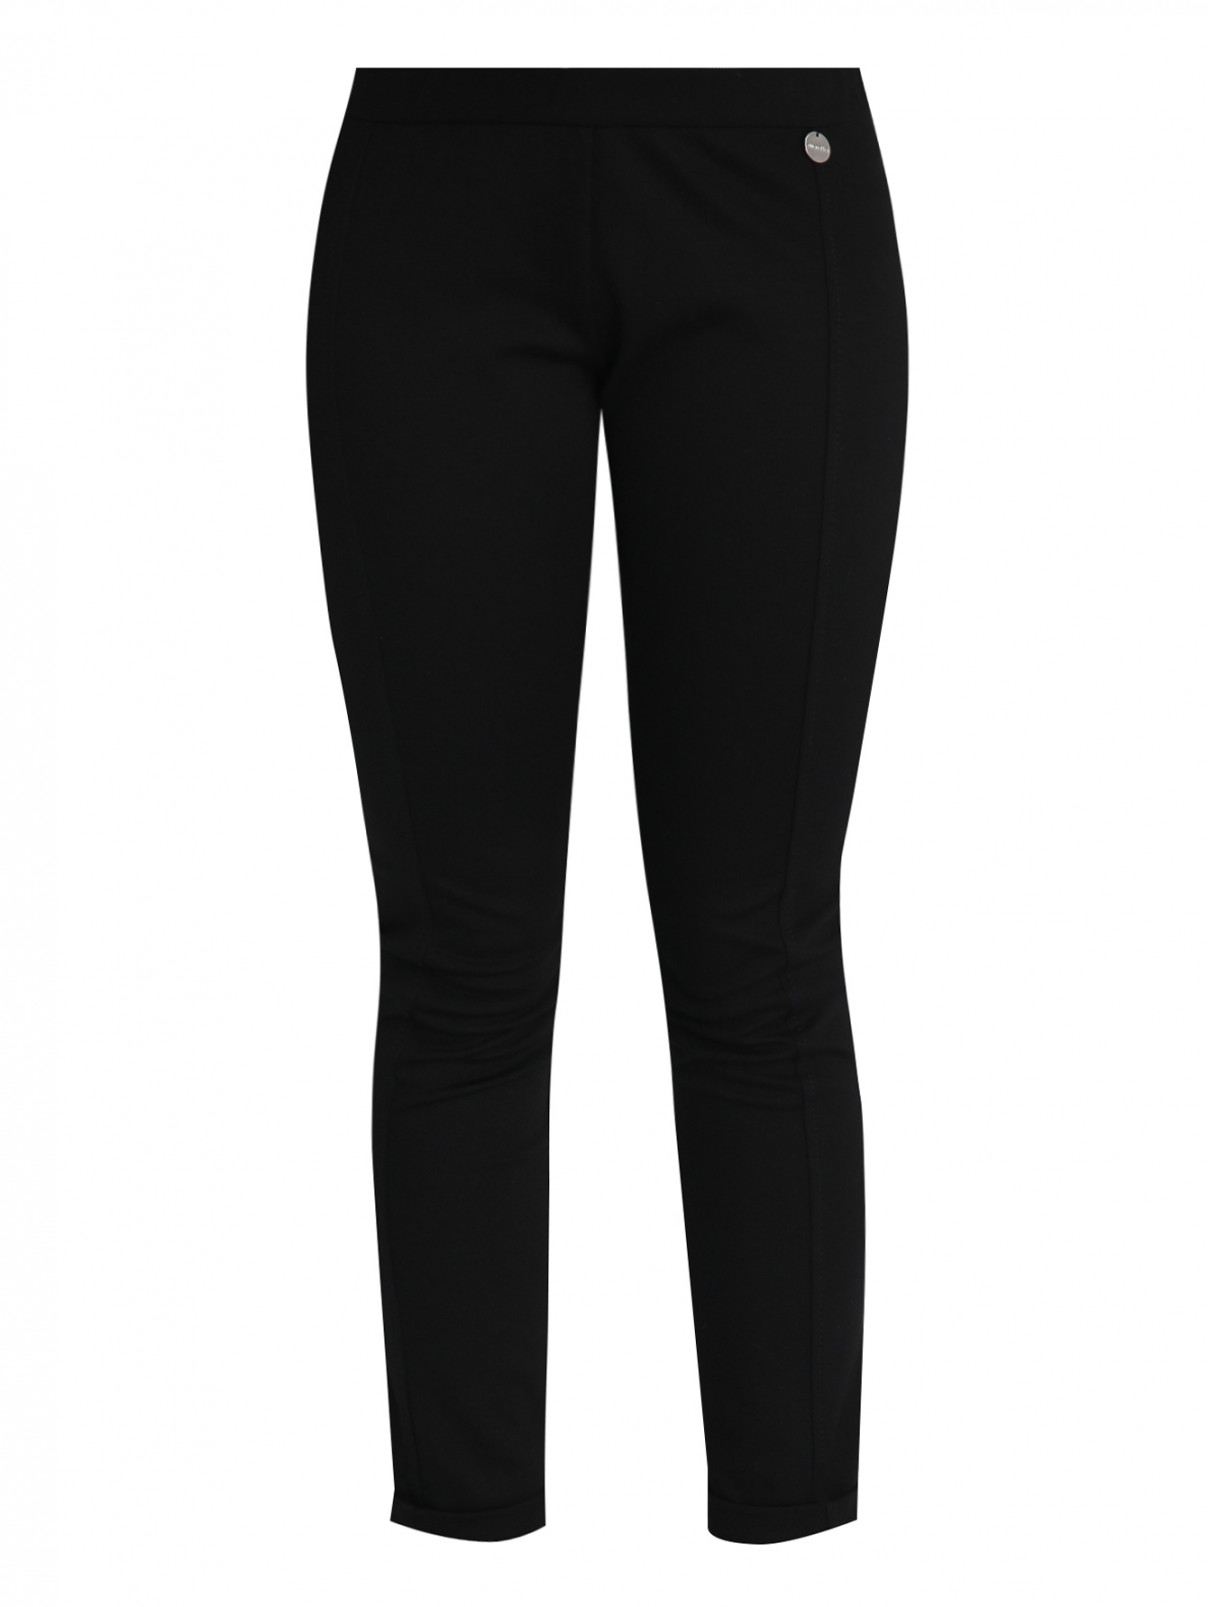 Трикотажные брюки на резинке Simonetta  –  Общий вид  – Цвет:  Черный